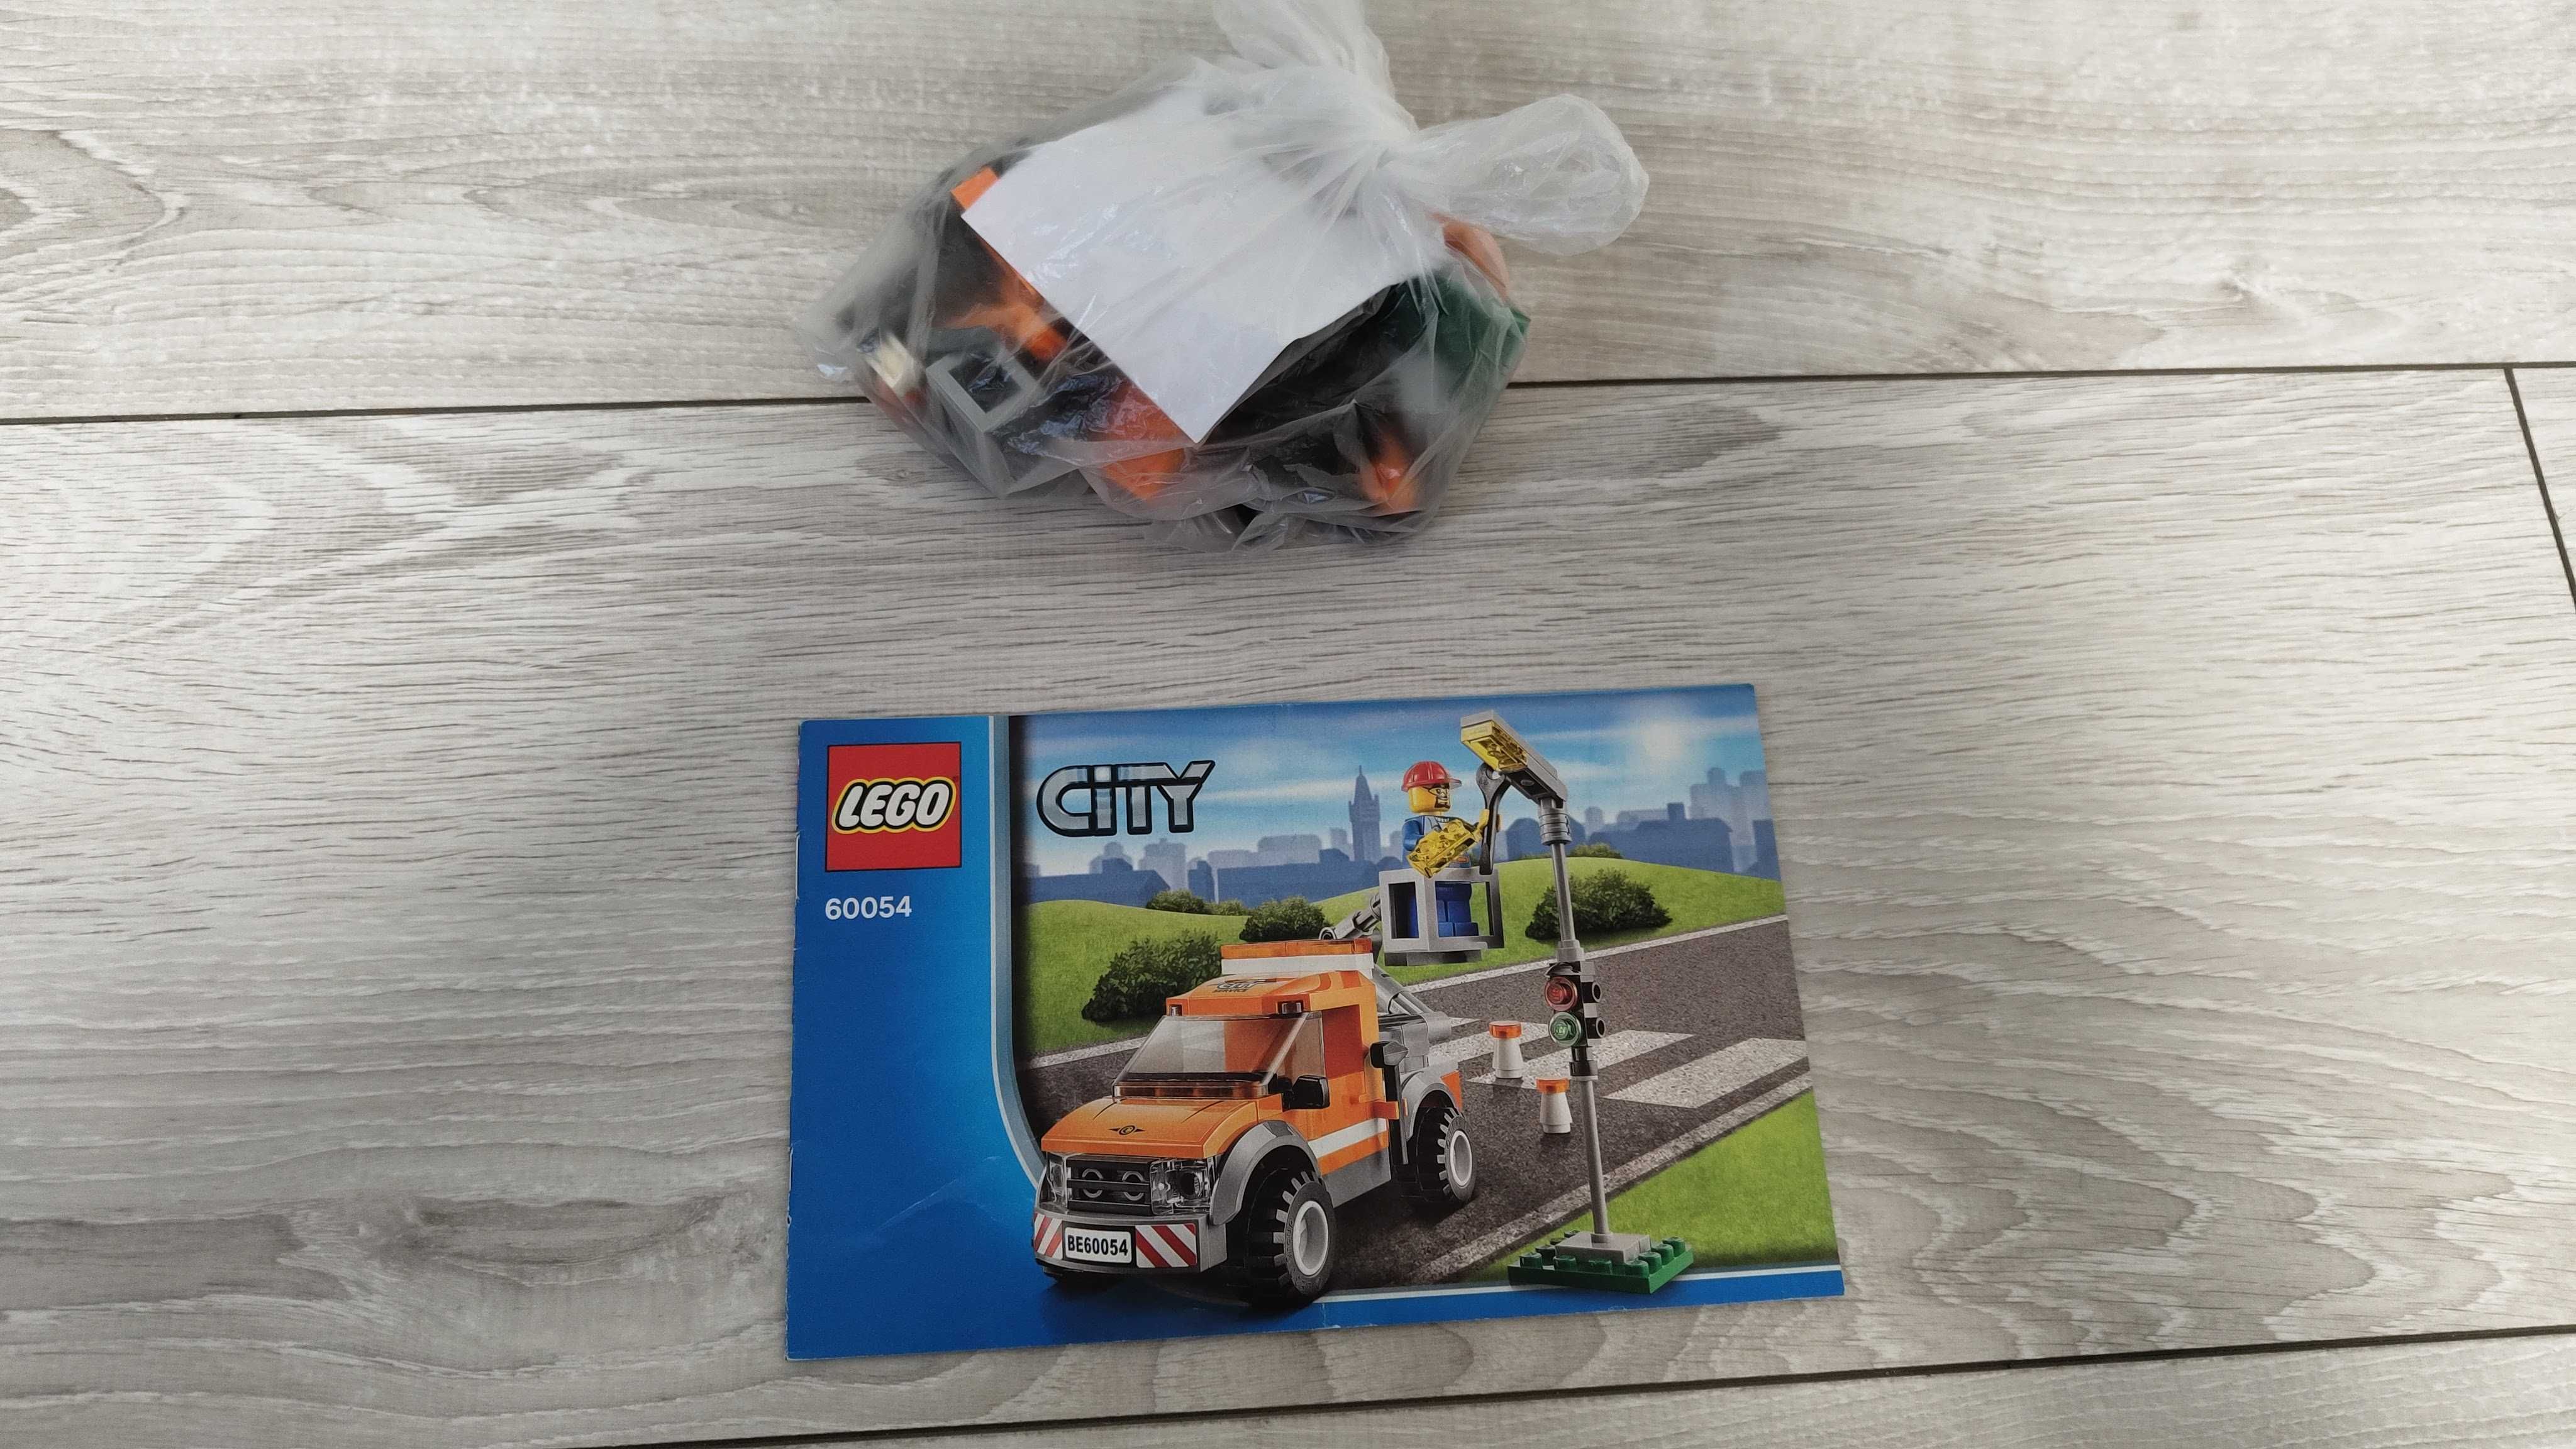 LEGO City (60018, 60054, 60083, 60082, 60016, 31018, 70805)